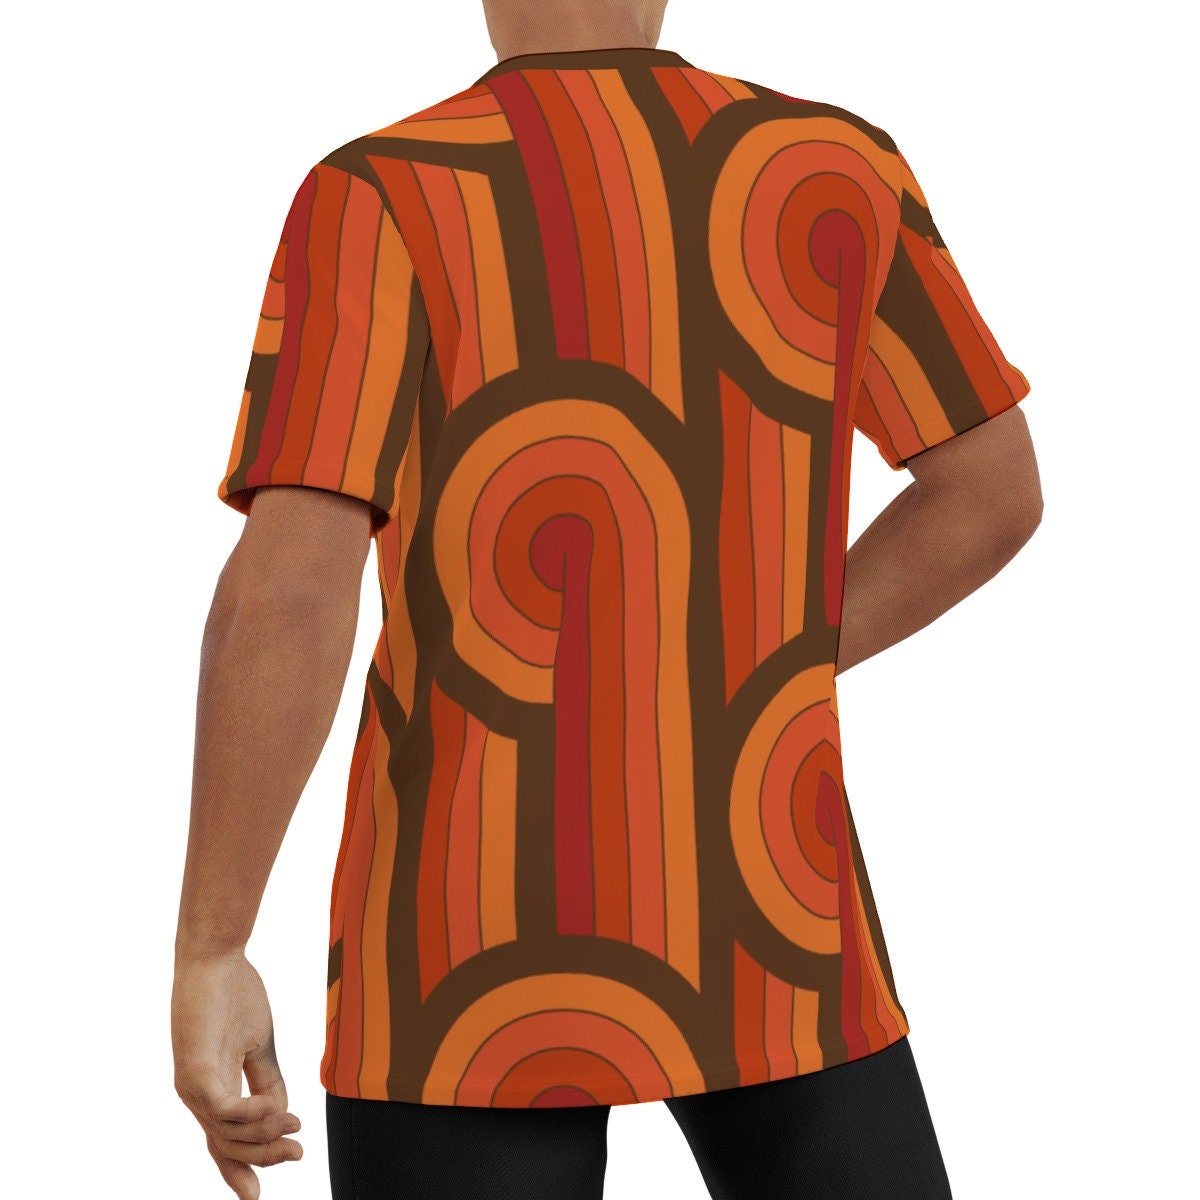 Eco friendly T-shirt, Retro Tshirt, 70s style shirt, Retro Top, Retro Tshirt Men,Orange stripe T-shirt, 70s Style T-shirt